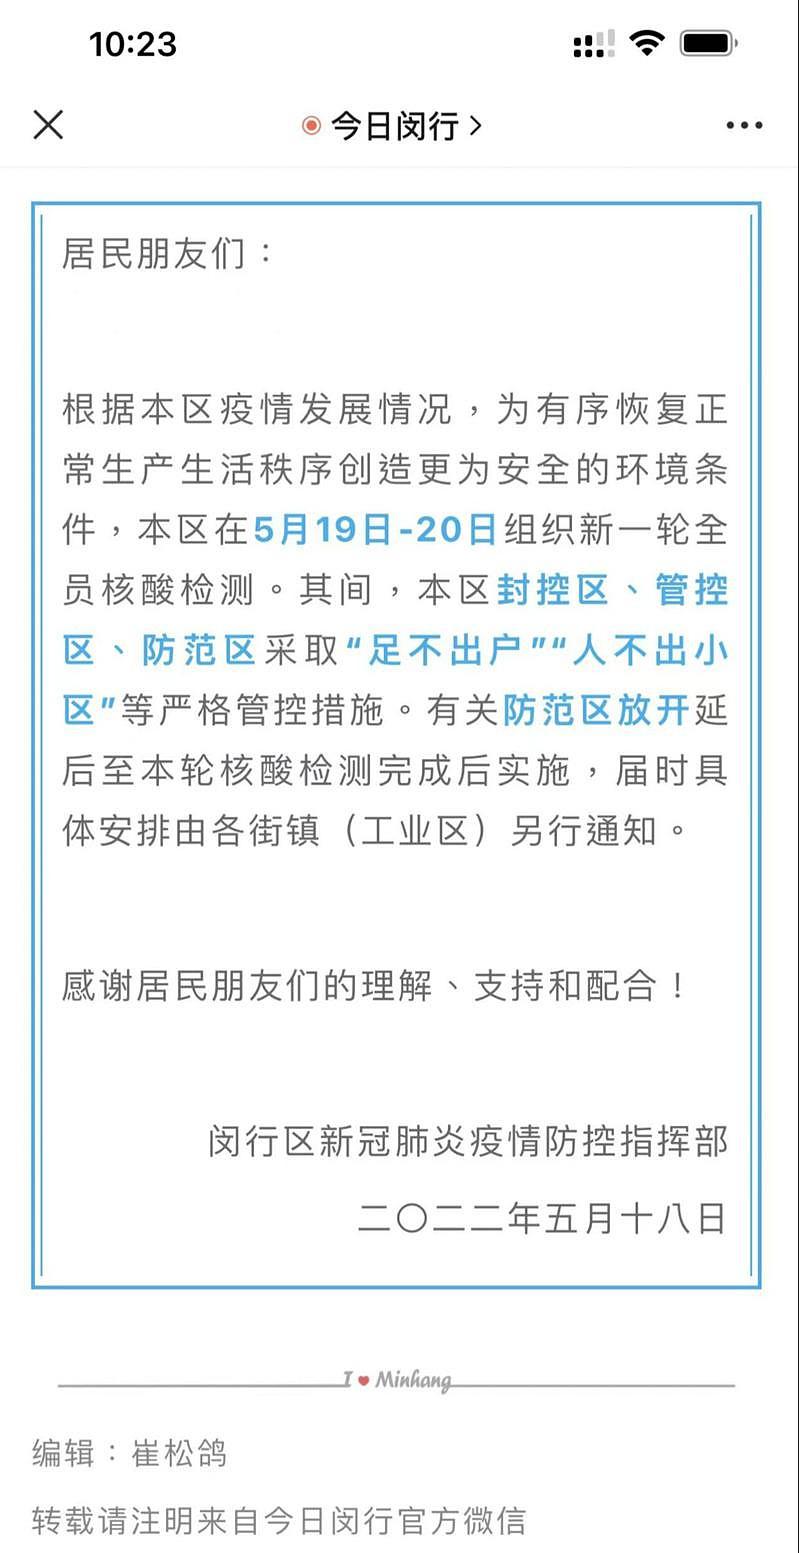 上海闵行区又传出封控，全员核酸，放开居民外出时间另行通知。 （取材自微信微信）